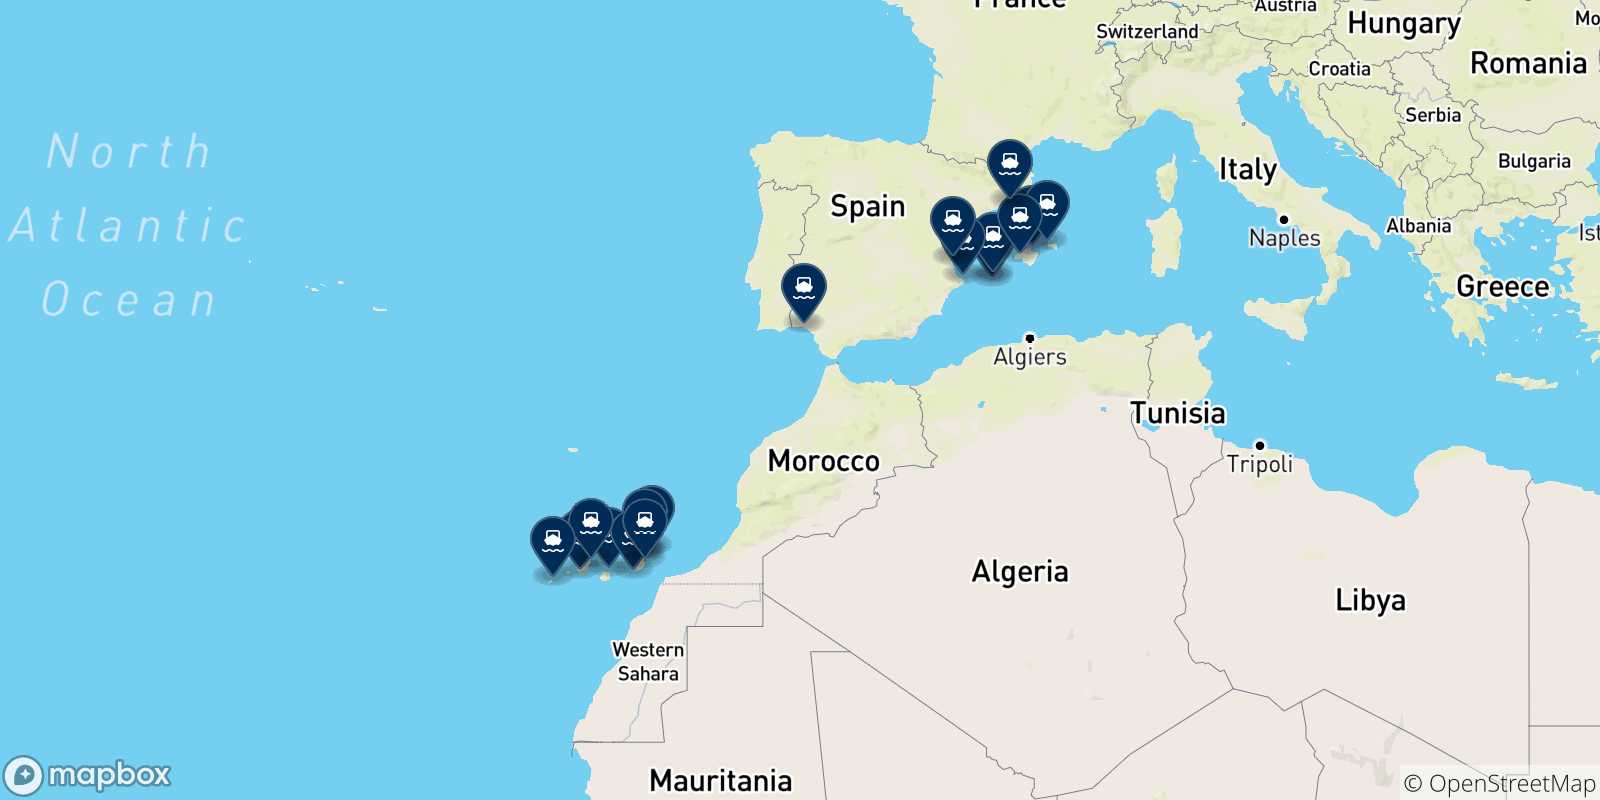 Mappa delle possibili rotte tra la Spagna e la Spagna